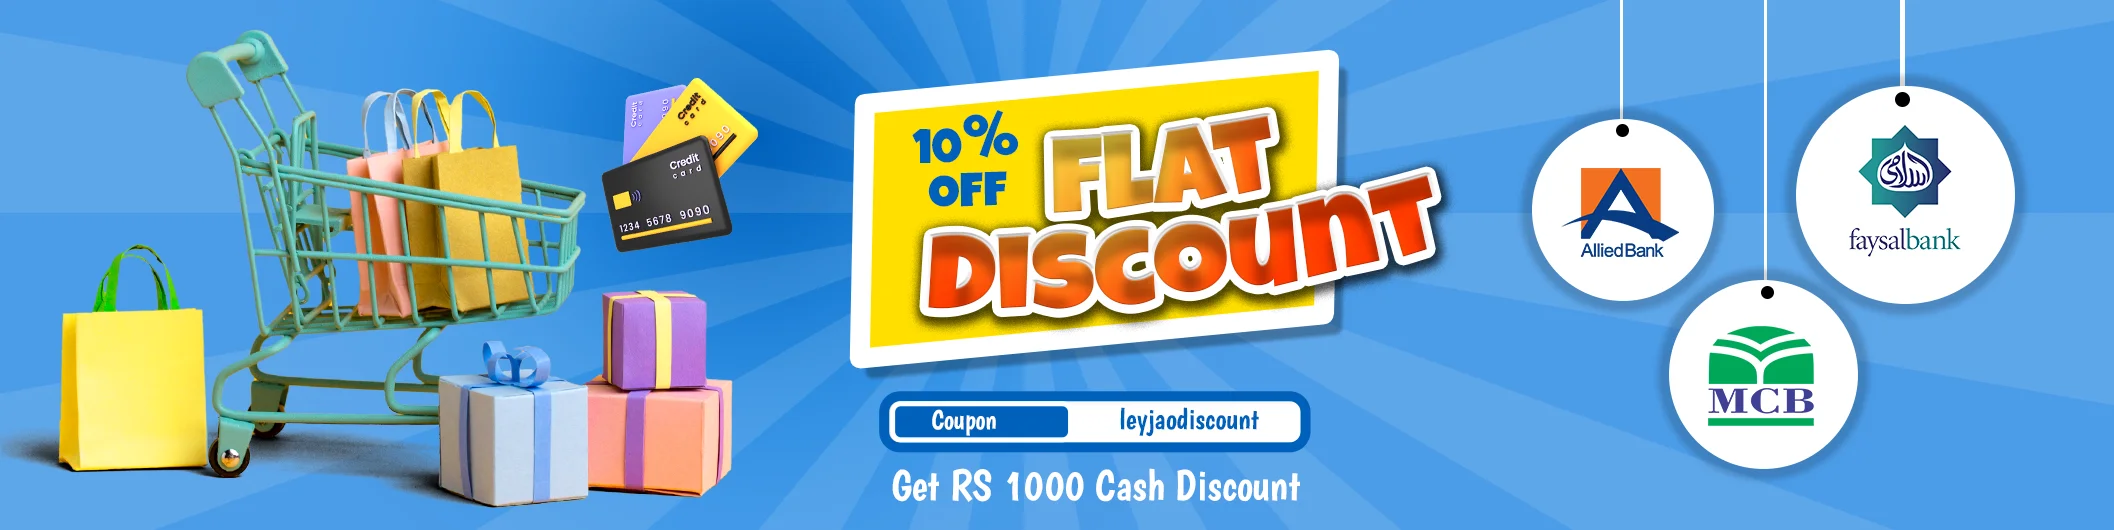 Flat 10 percent discount